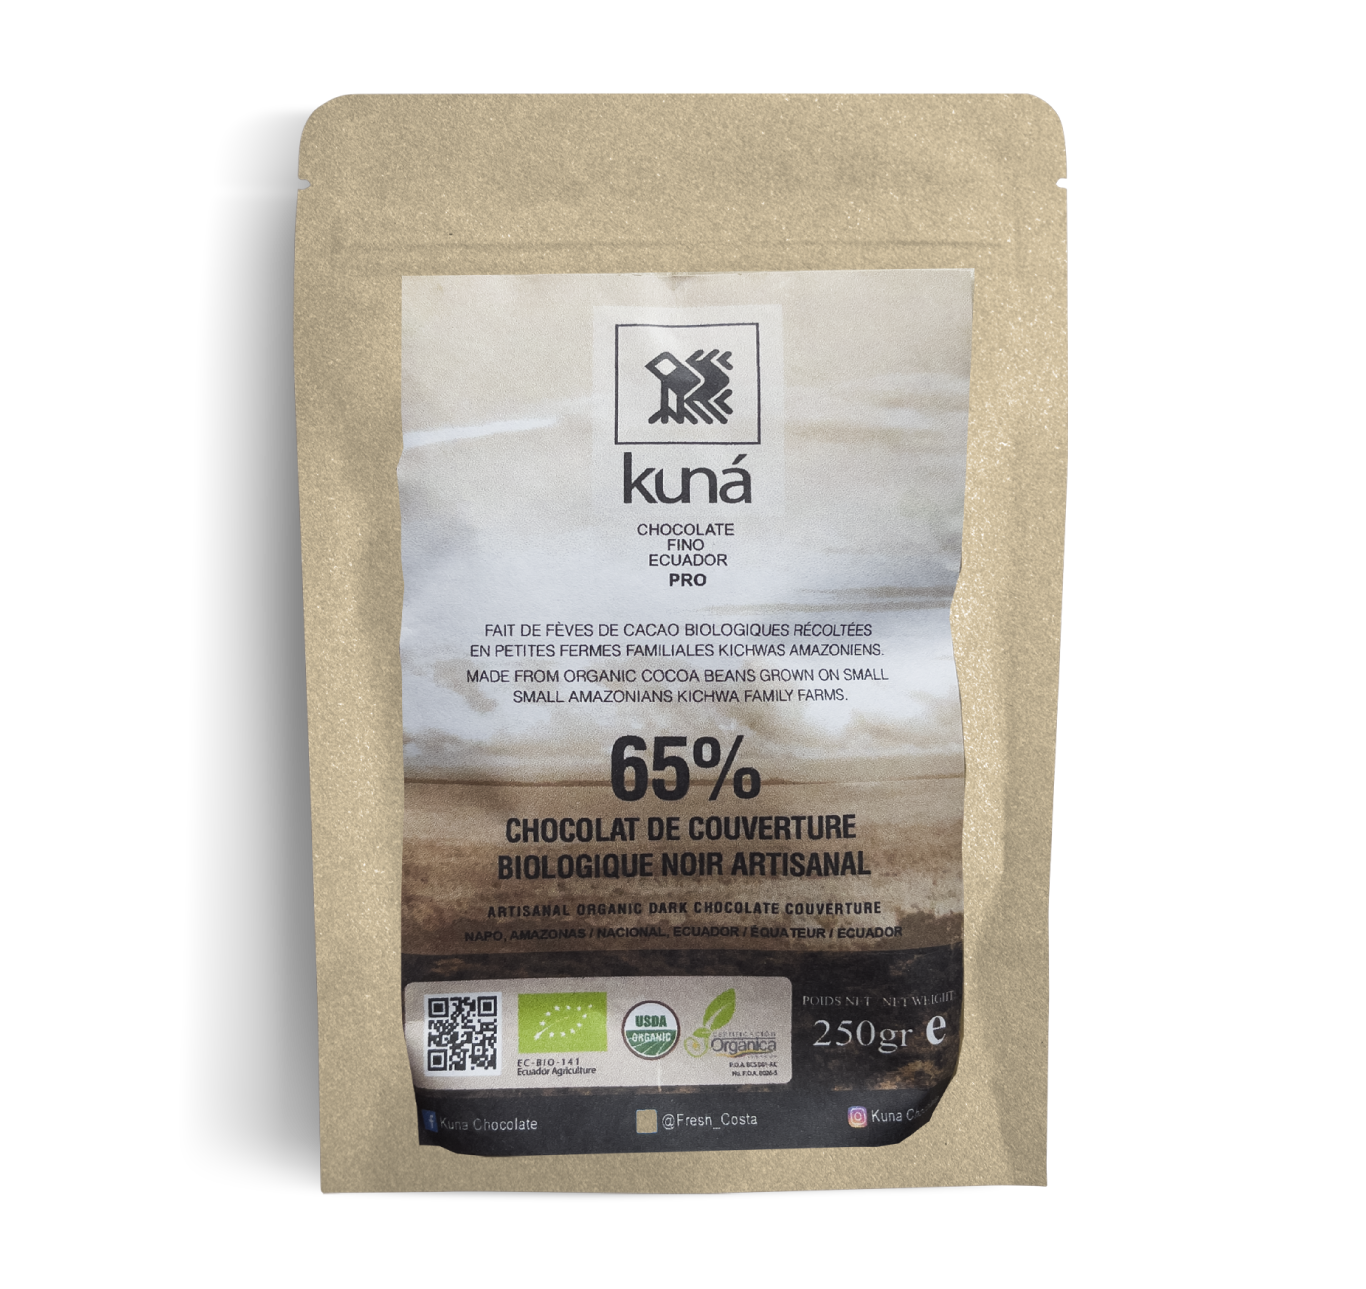 65% Artisanal organic dark chocolate coverture